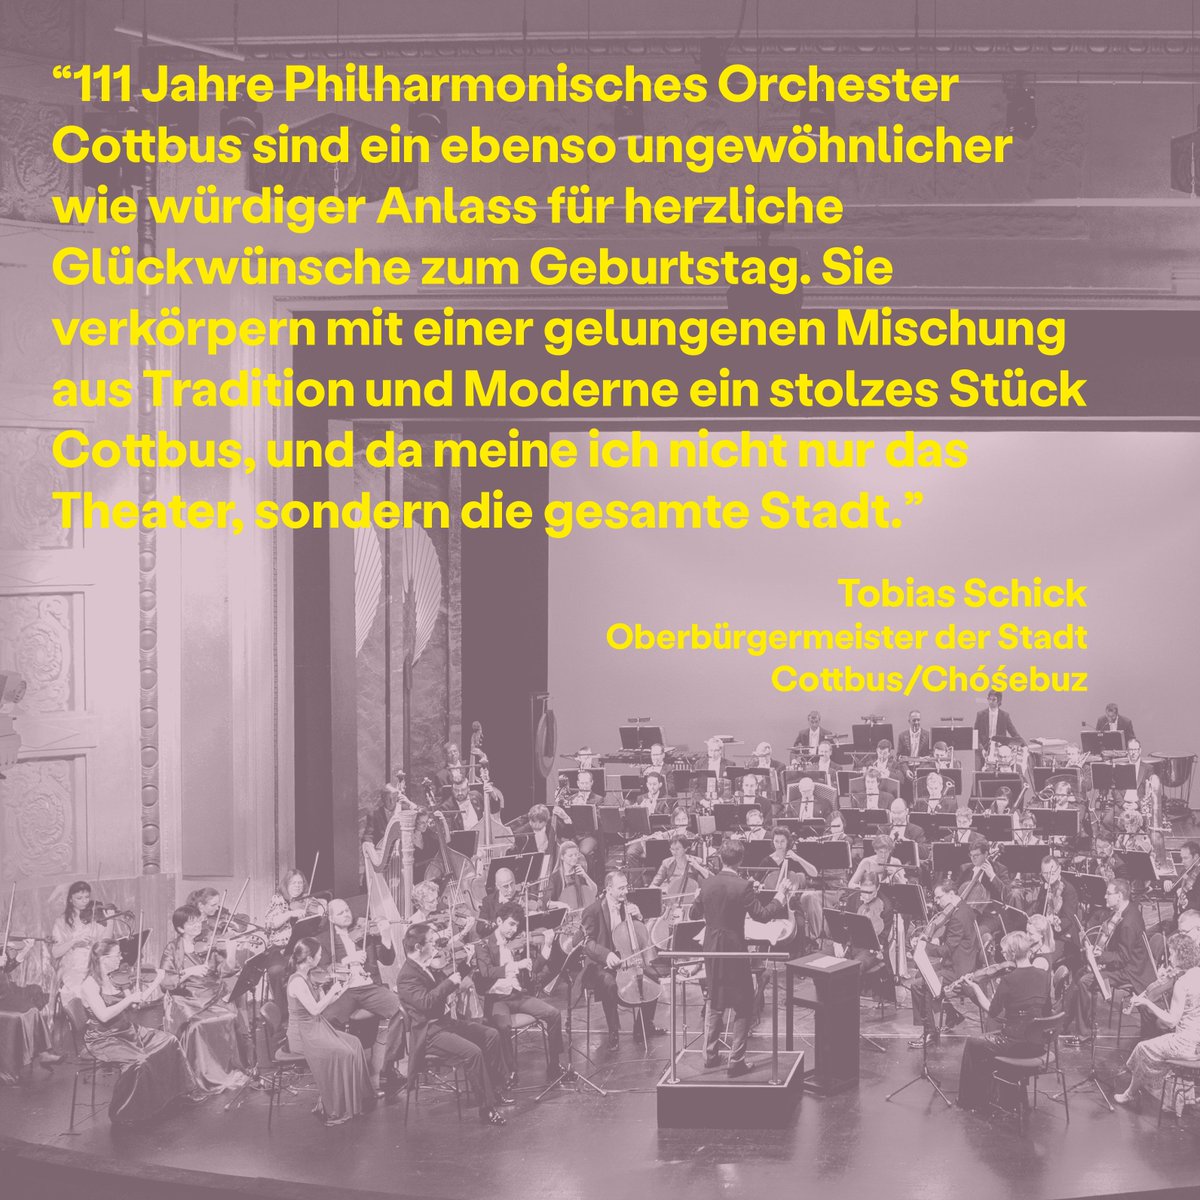 Mit dem 1. PHILHARMONISCHEN KONZERT, Weckruf der Welt, feiern wir den 111. Geburtstag des Philharmonischen Orchesters. Erleben könnt ihr das Festkonzert unter der Leitung von Alexander Merzyn am 22. und 24. September 2023 im Großen Haus.